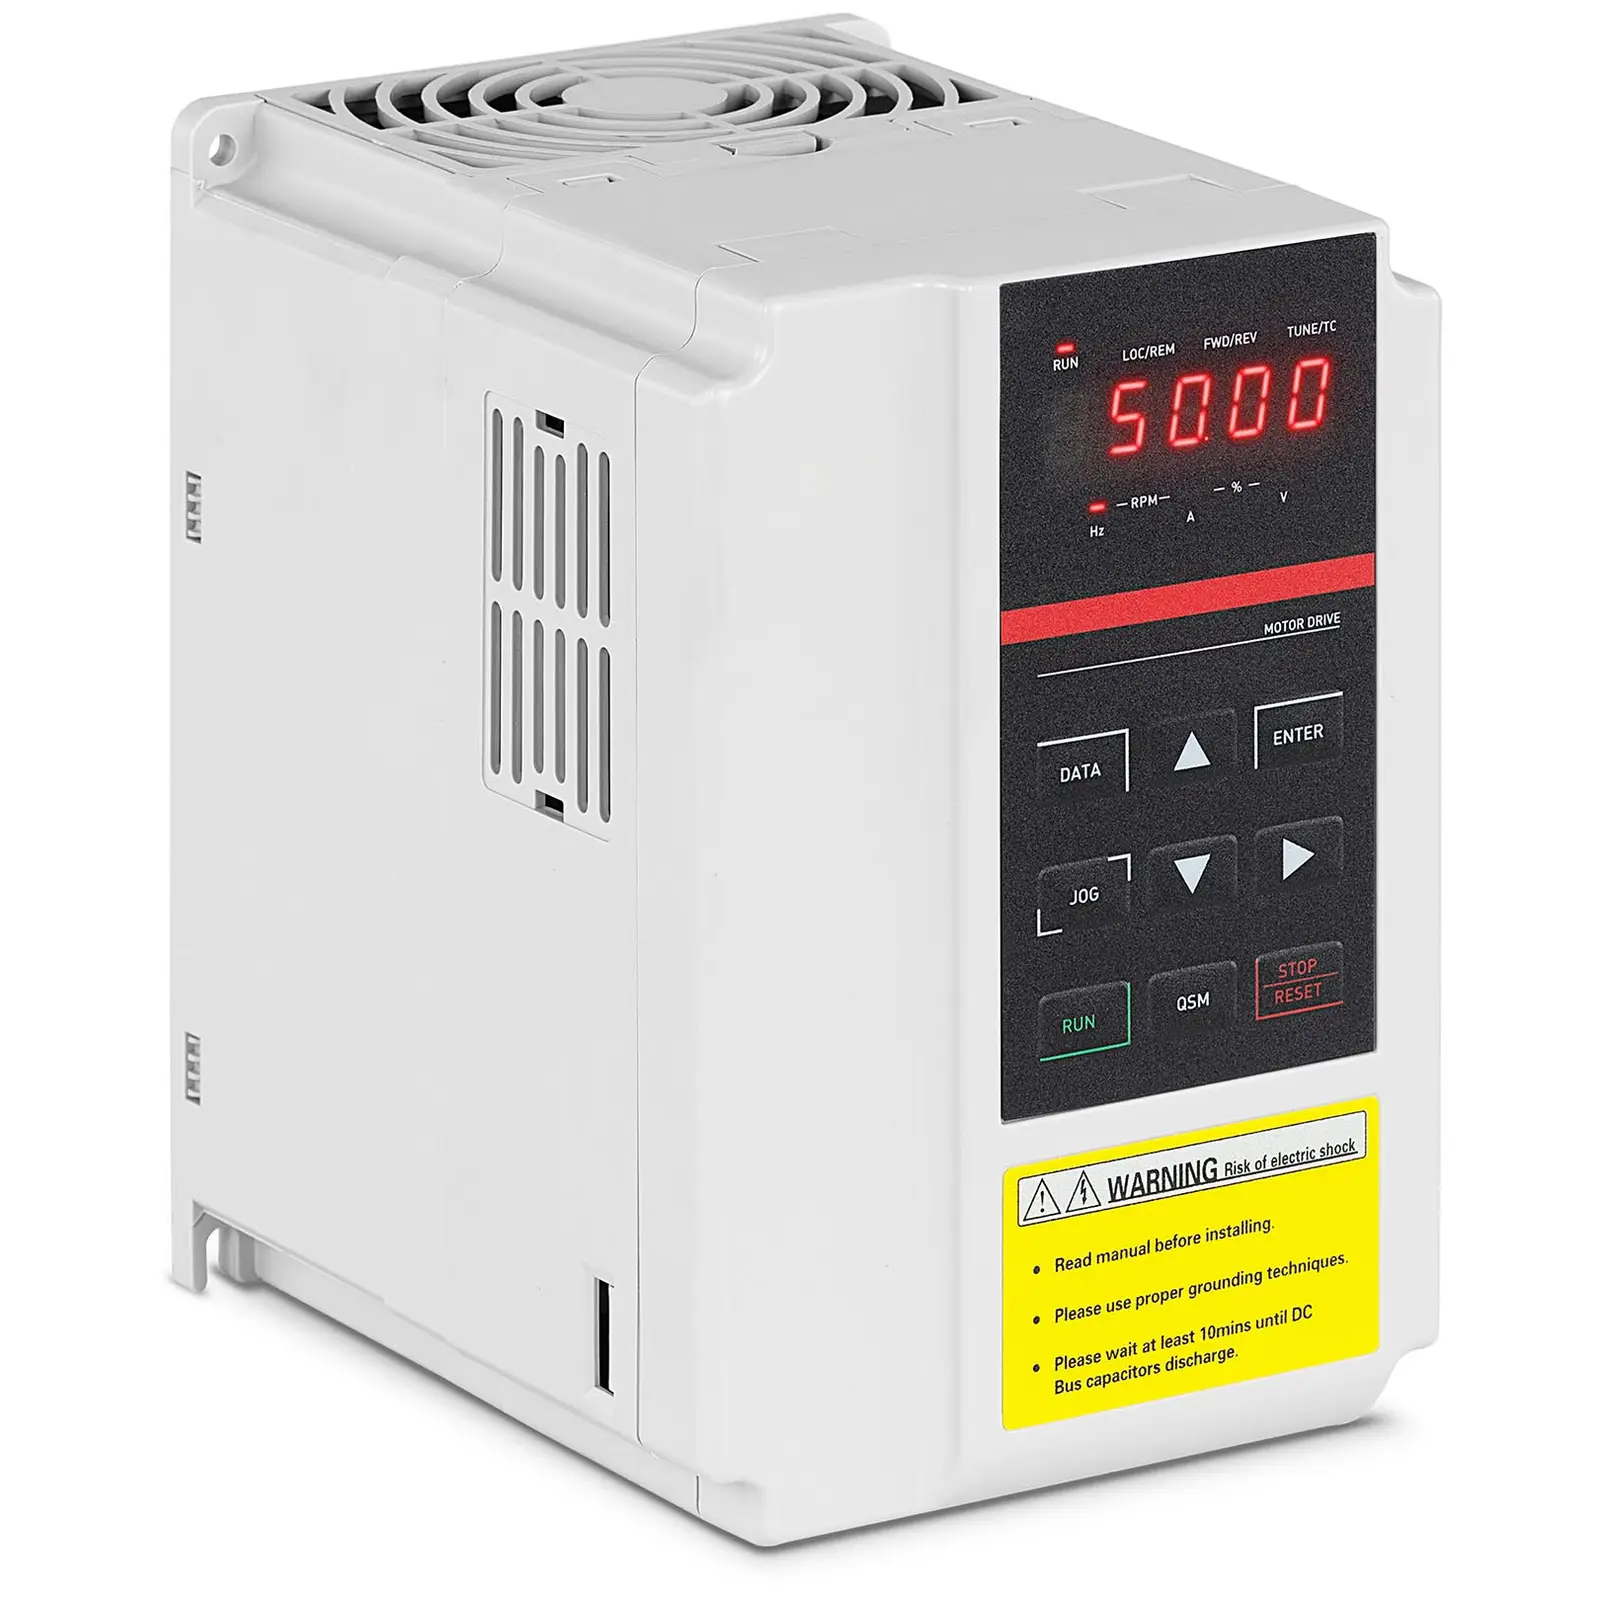 Convertor de frecvență - 1,5 kW / 2 CP - 380 V - {{frecvență_409_temp}} Hz - LED